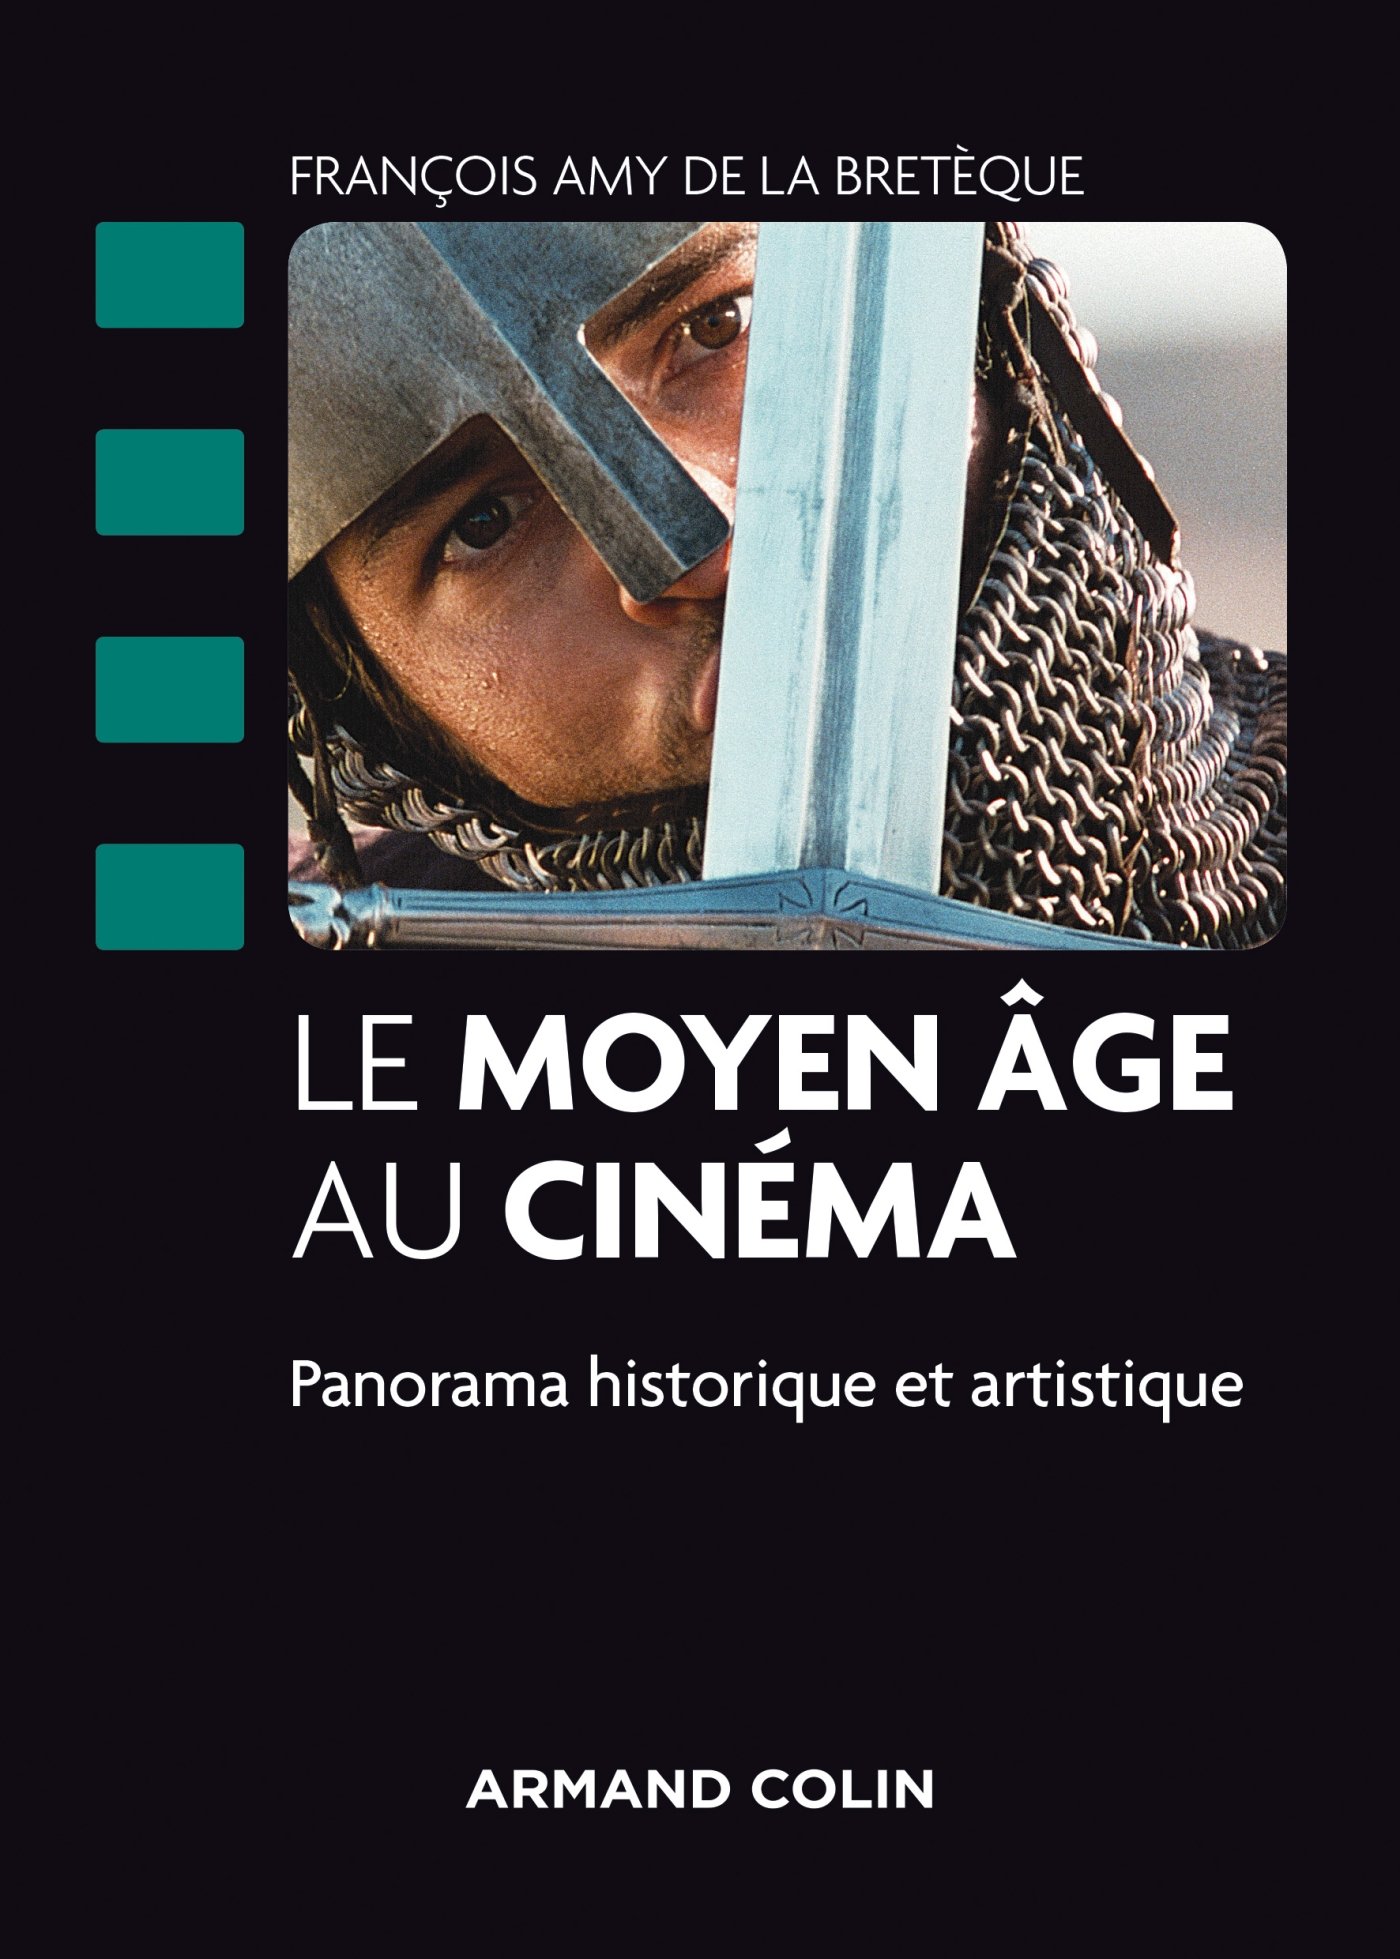 Le Moyen Âge au cinéma, Panorama historique et artistique, 2015, 224 p.